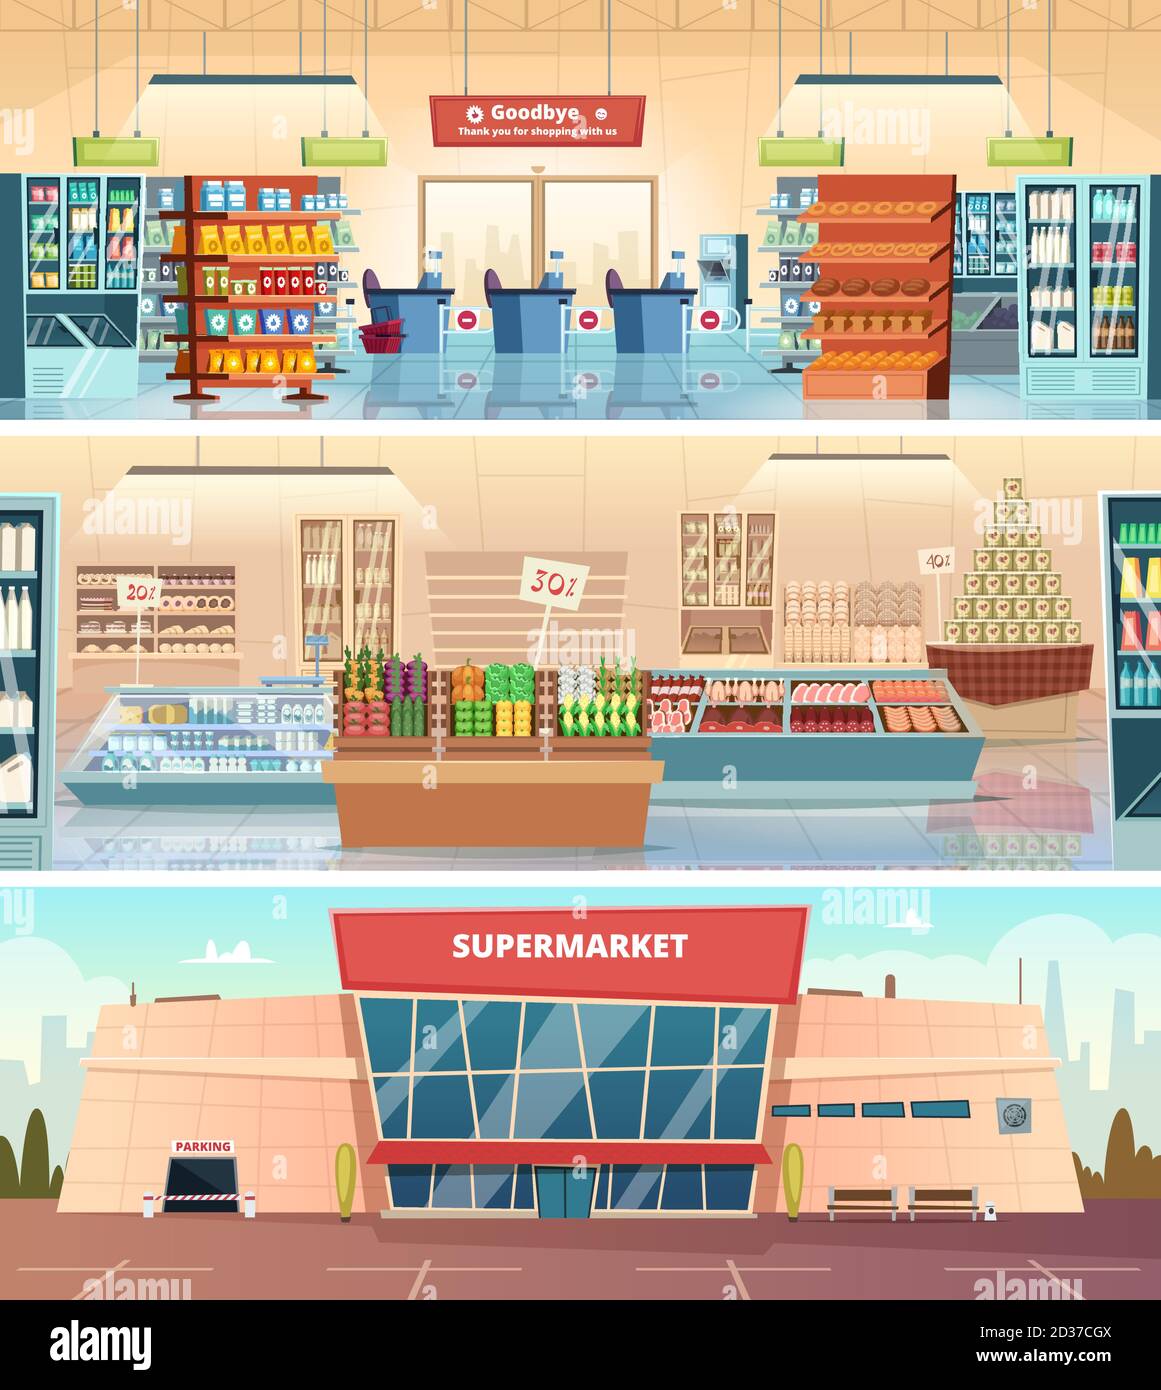 Supermarket facade. Grocery food market interior mall inside cashier vector cartoon illustrations Stock Vector